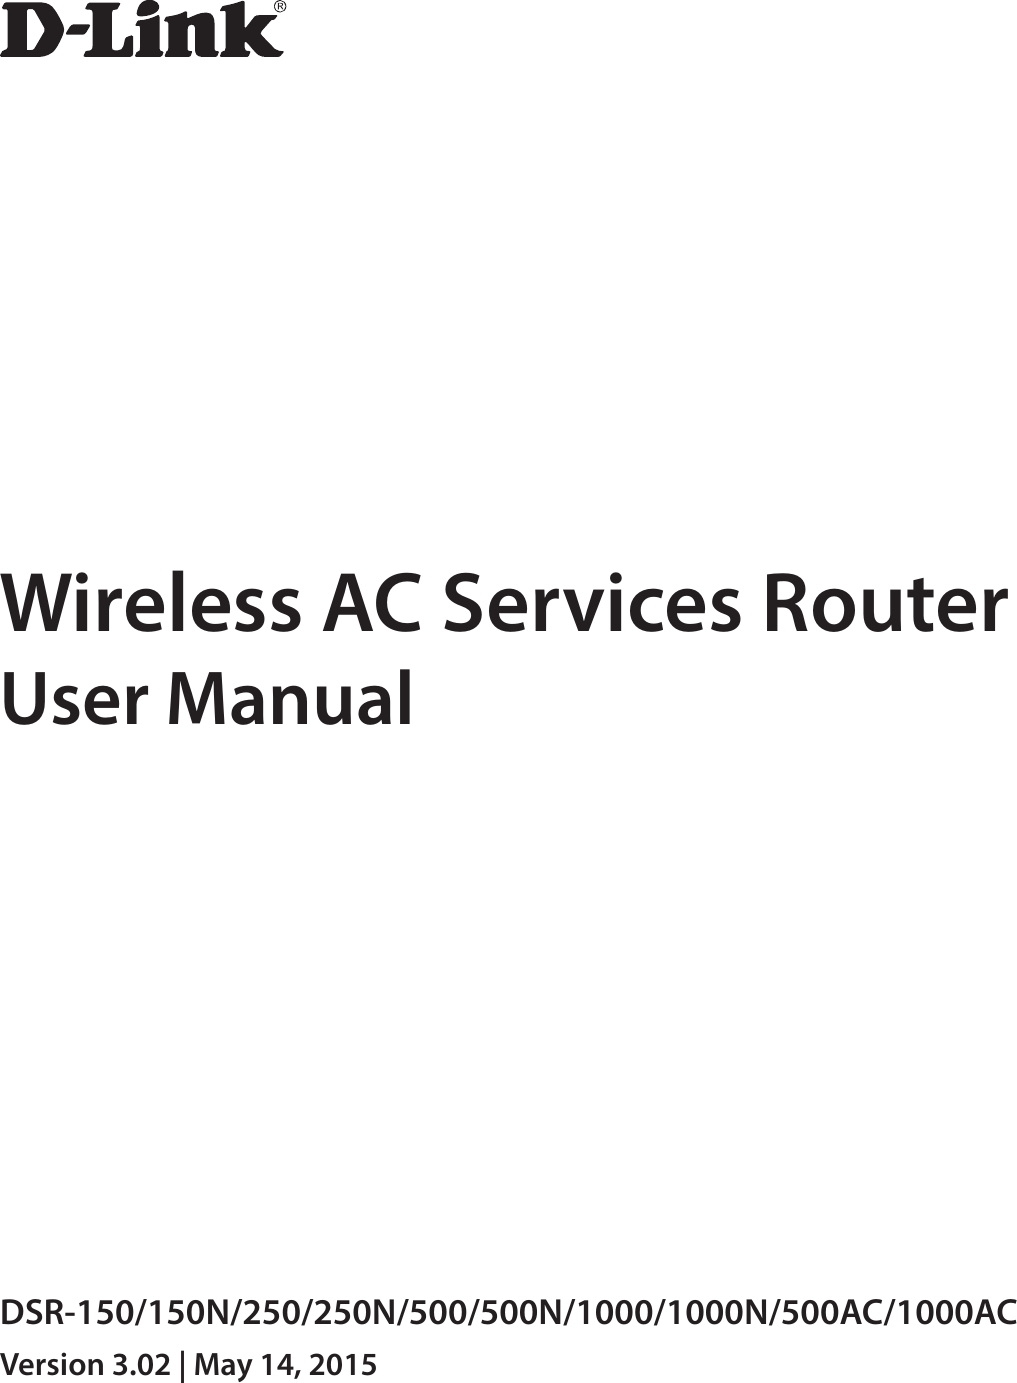 Wireless AC Services RouterUser ManualDSR-150/150N/250/250N/500/500N/1000/1000N/500AC/1000ACVersion 3.02 | May 14, 2015